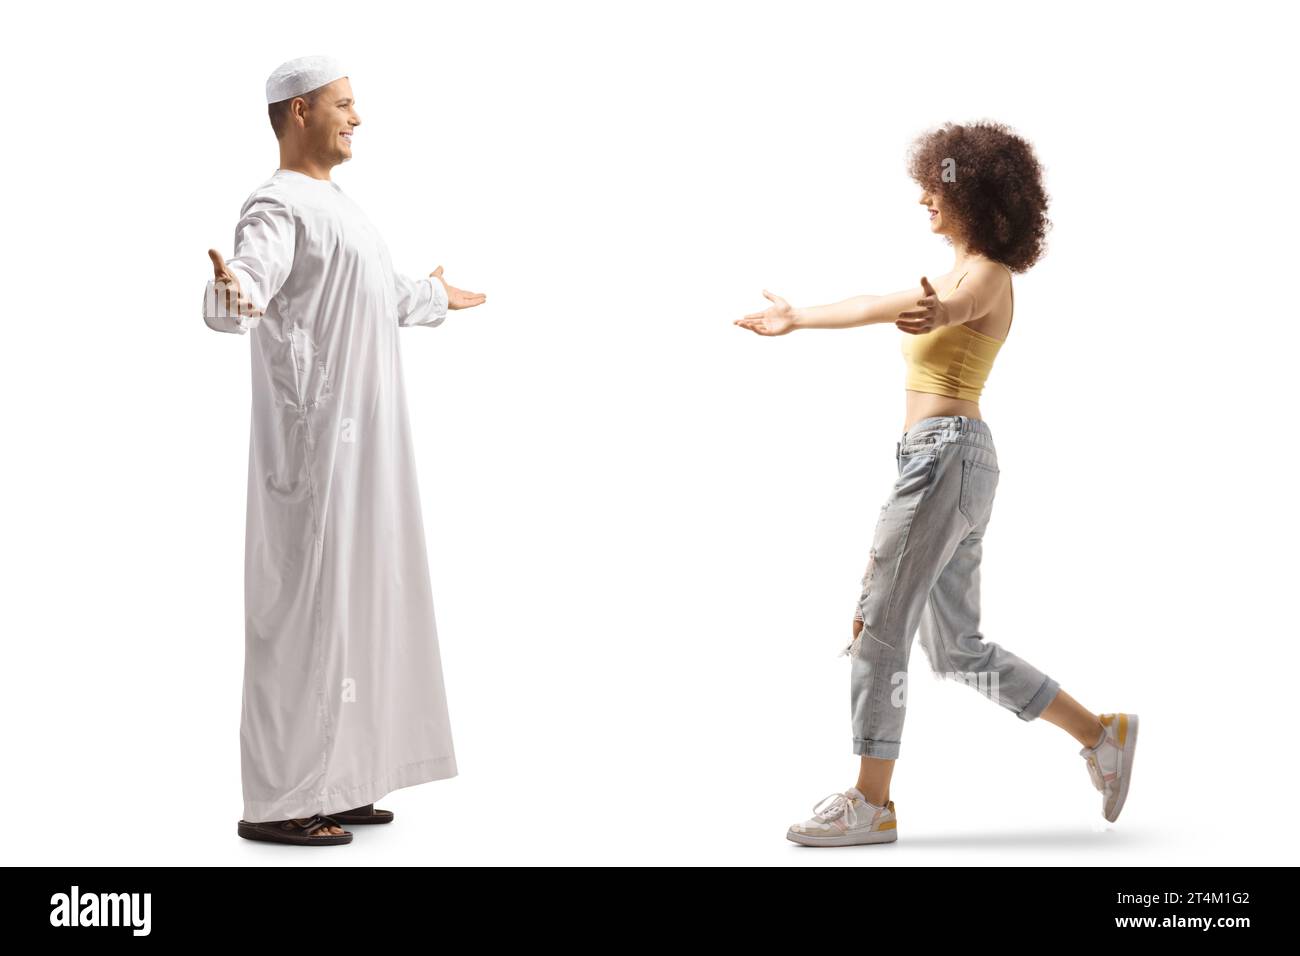 Uomo musulmano che incontra una giovane donna di diversa etnia isolata su sfondo bianco Foto Stock